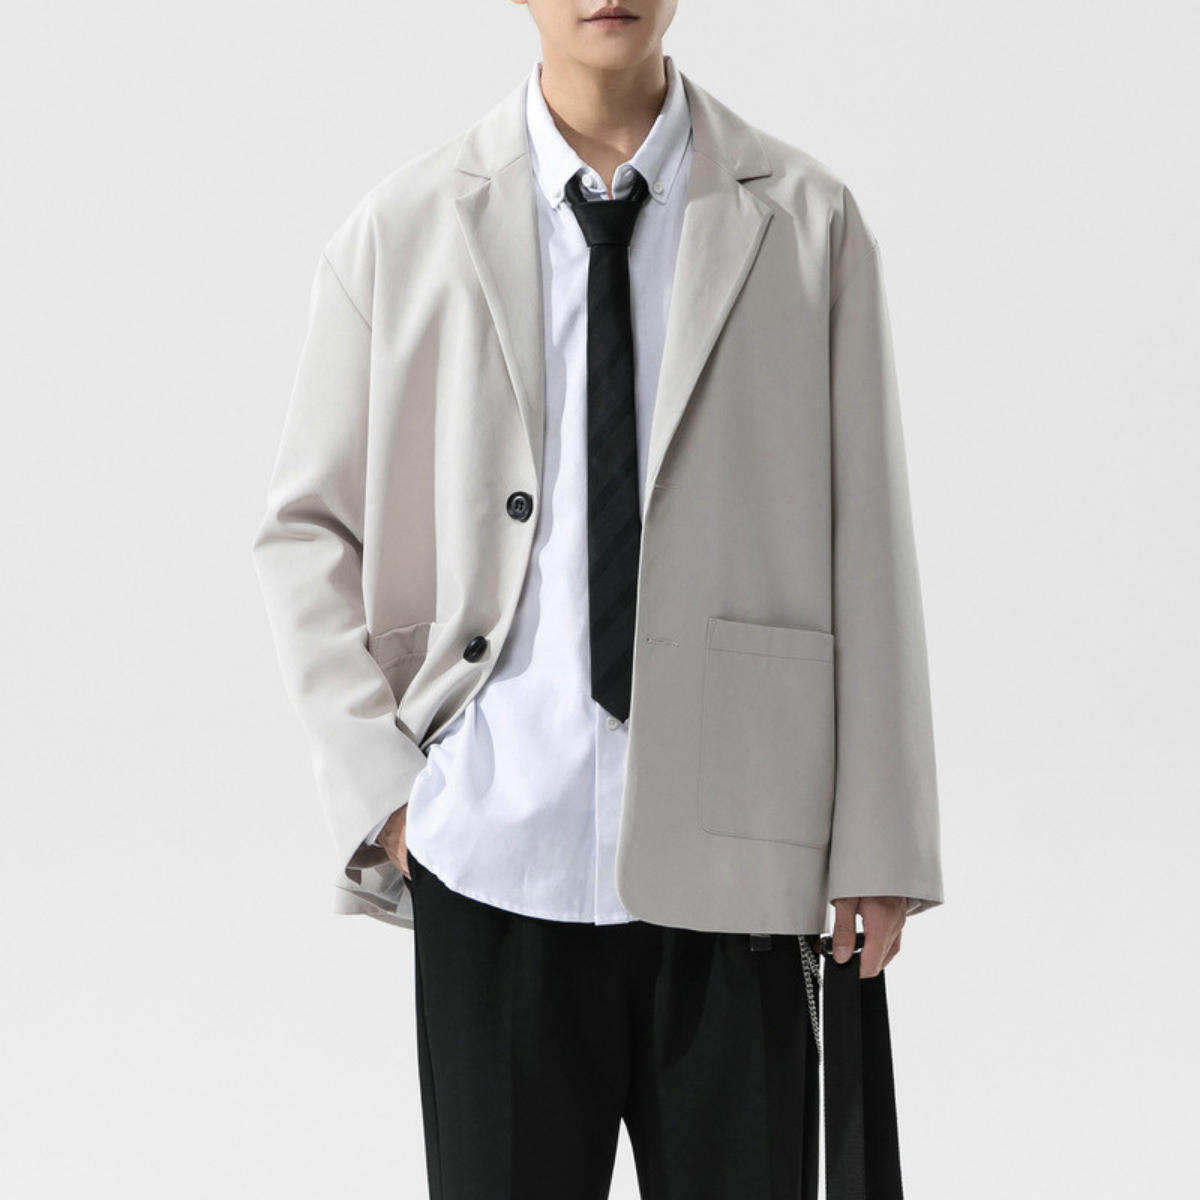 Áo blazer nam phong cách Unisex Hàn Quốc, mặc khoác công sở, đi học hay dạo phố đều phù hợp – Simple Man Fashion